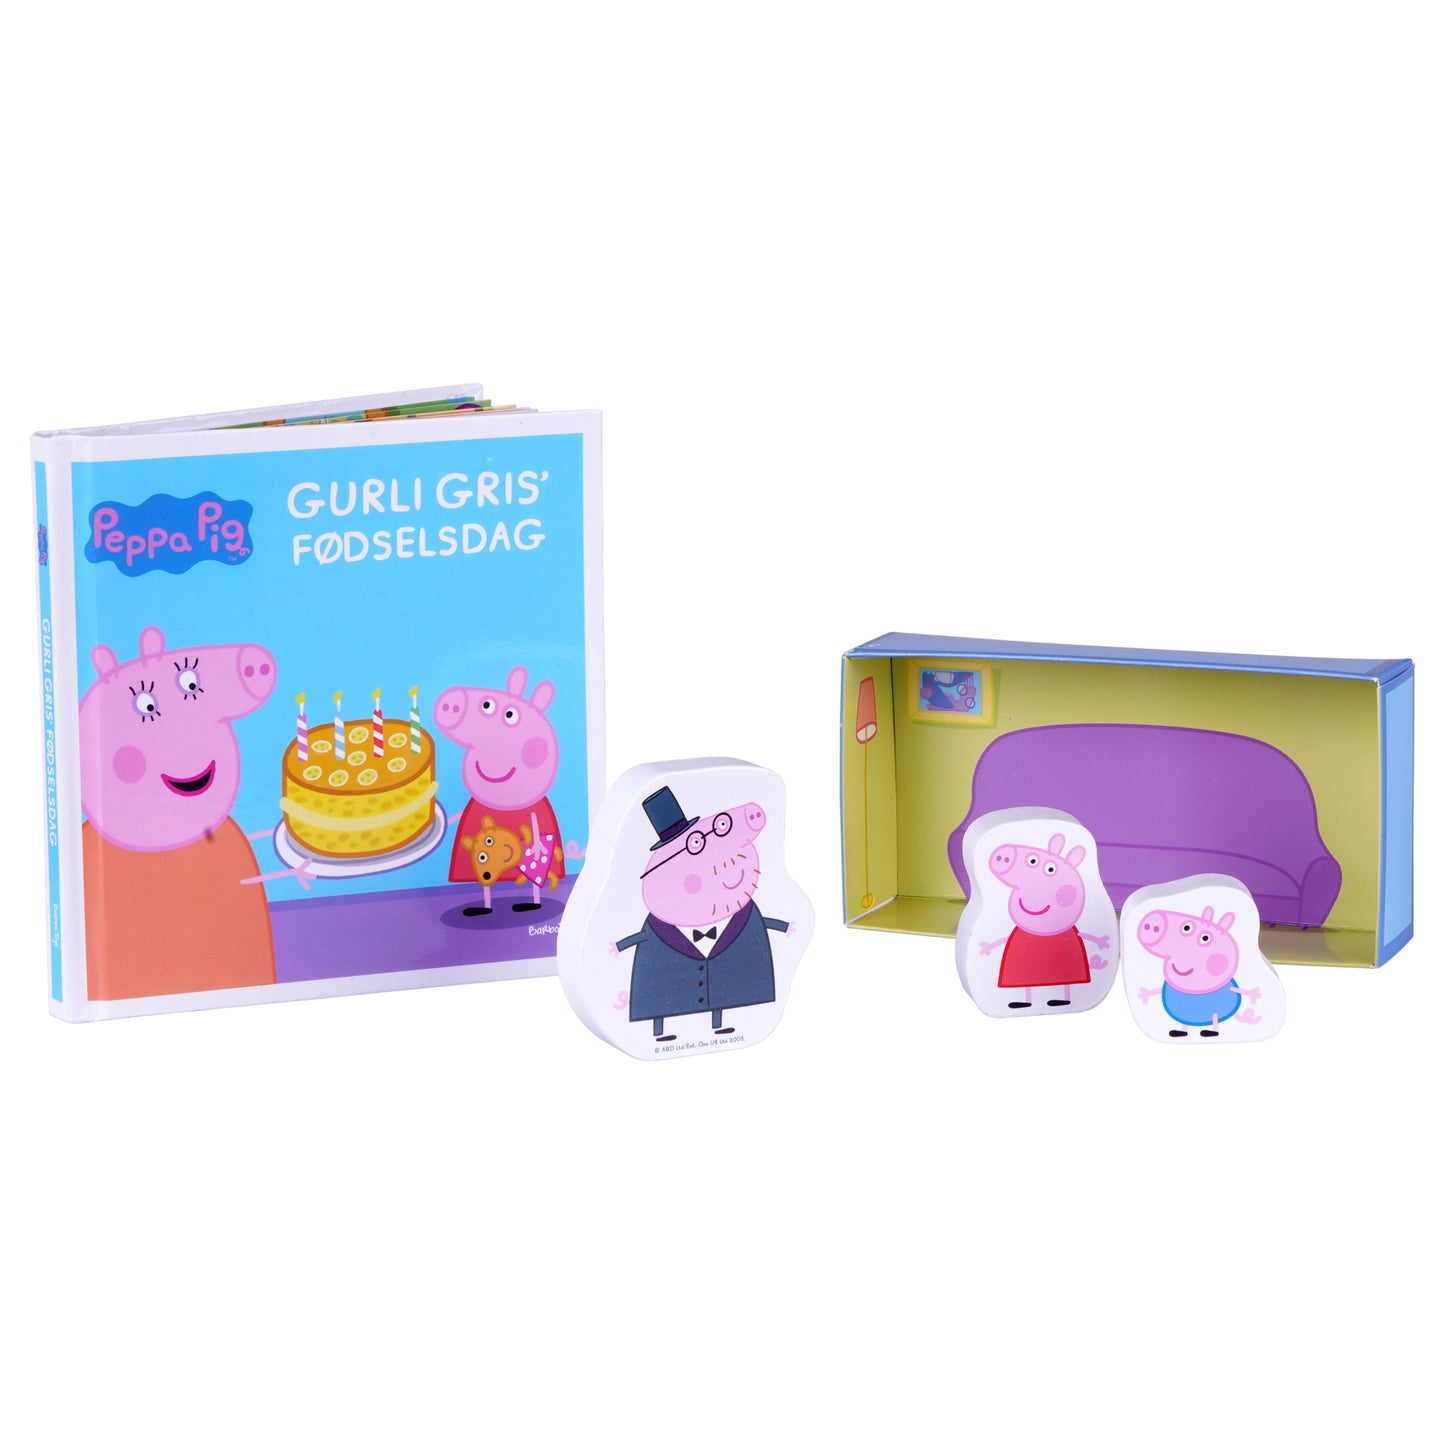 gurli gris fødselsdag legesæt med søde træfigurer og en bog